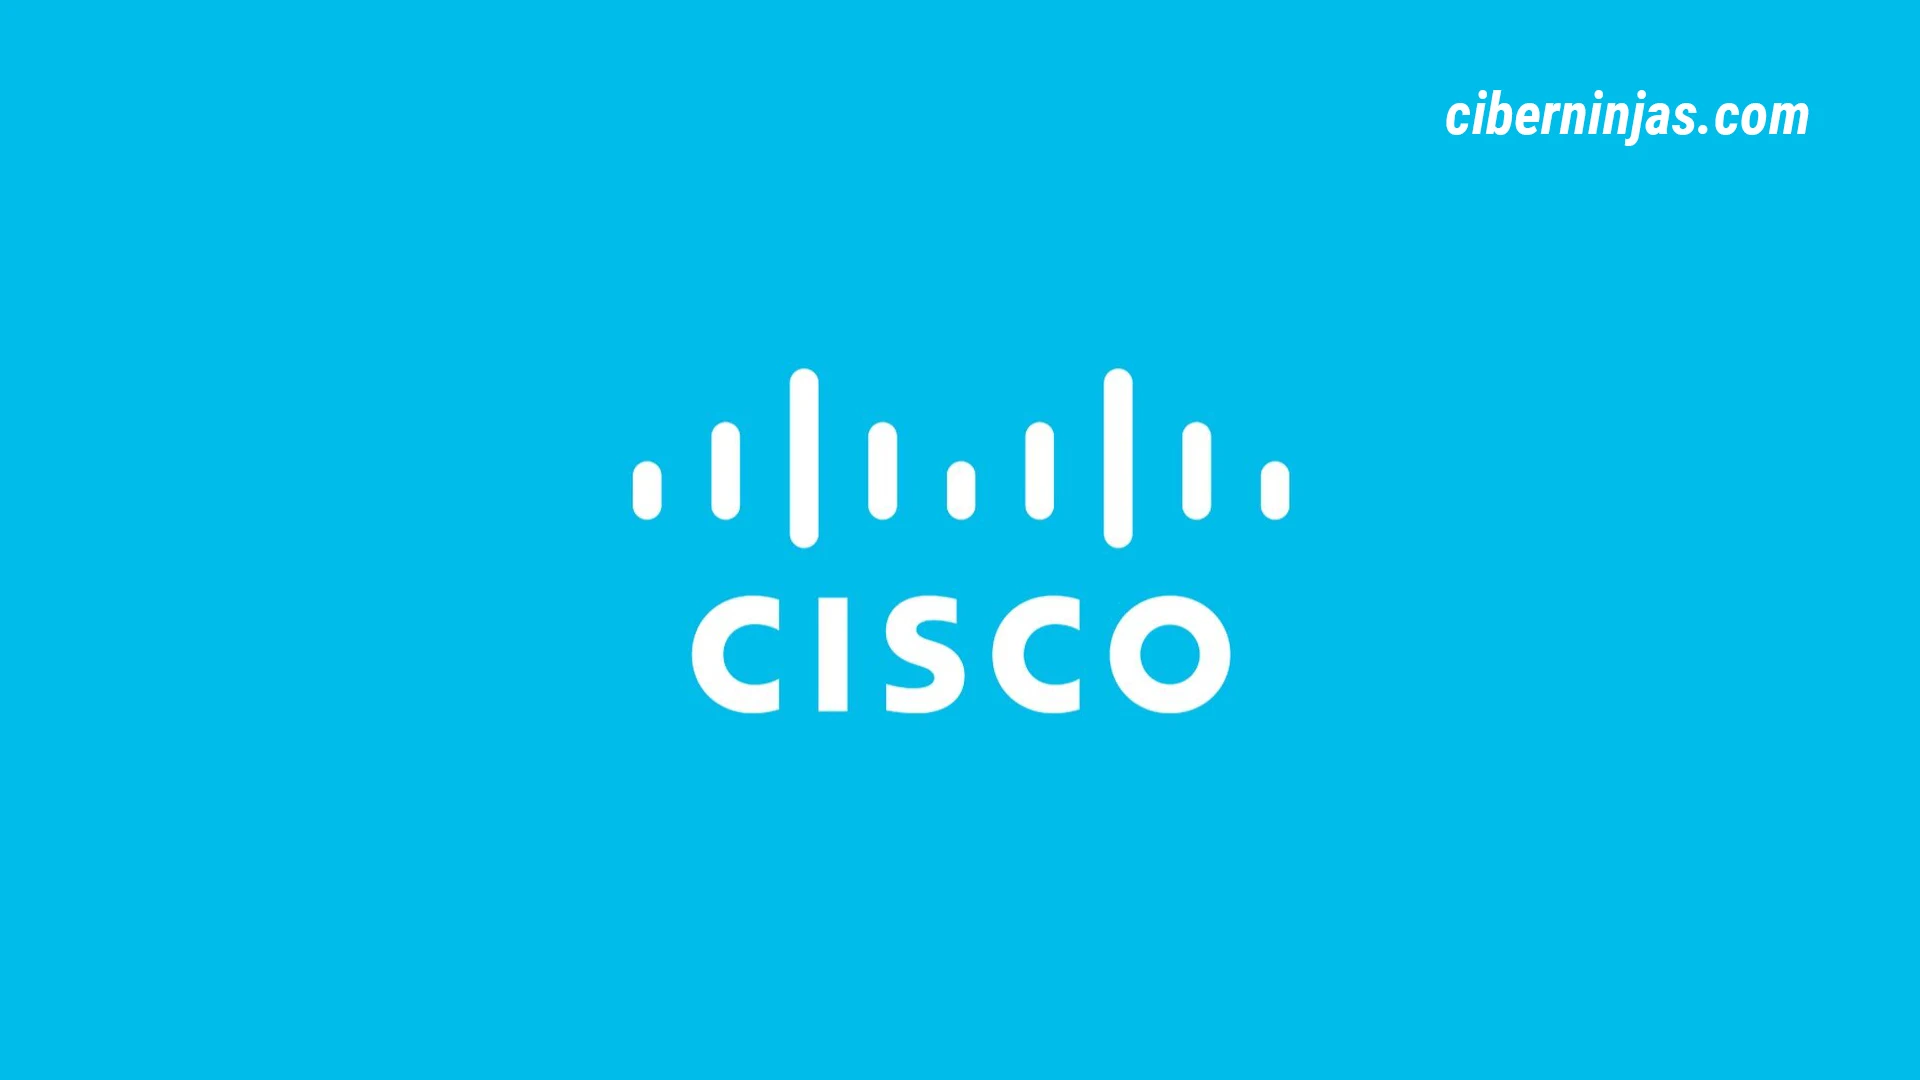 Cursos Gratis de Introducción a la Ciberseguridad, Linux, Python e Internet de las Cosas con Cisco